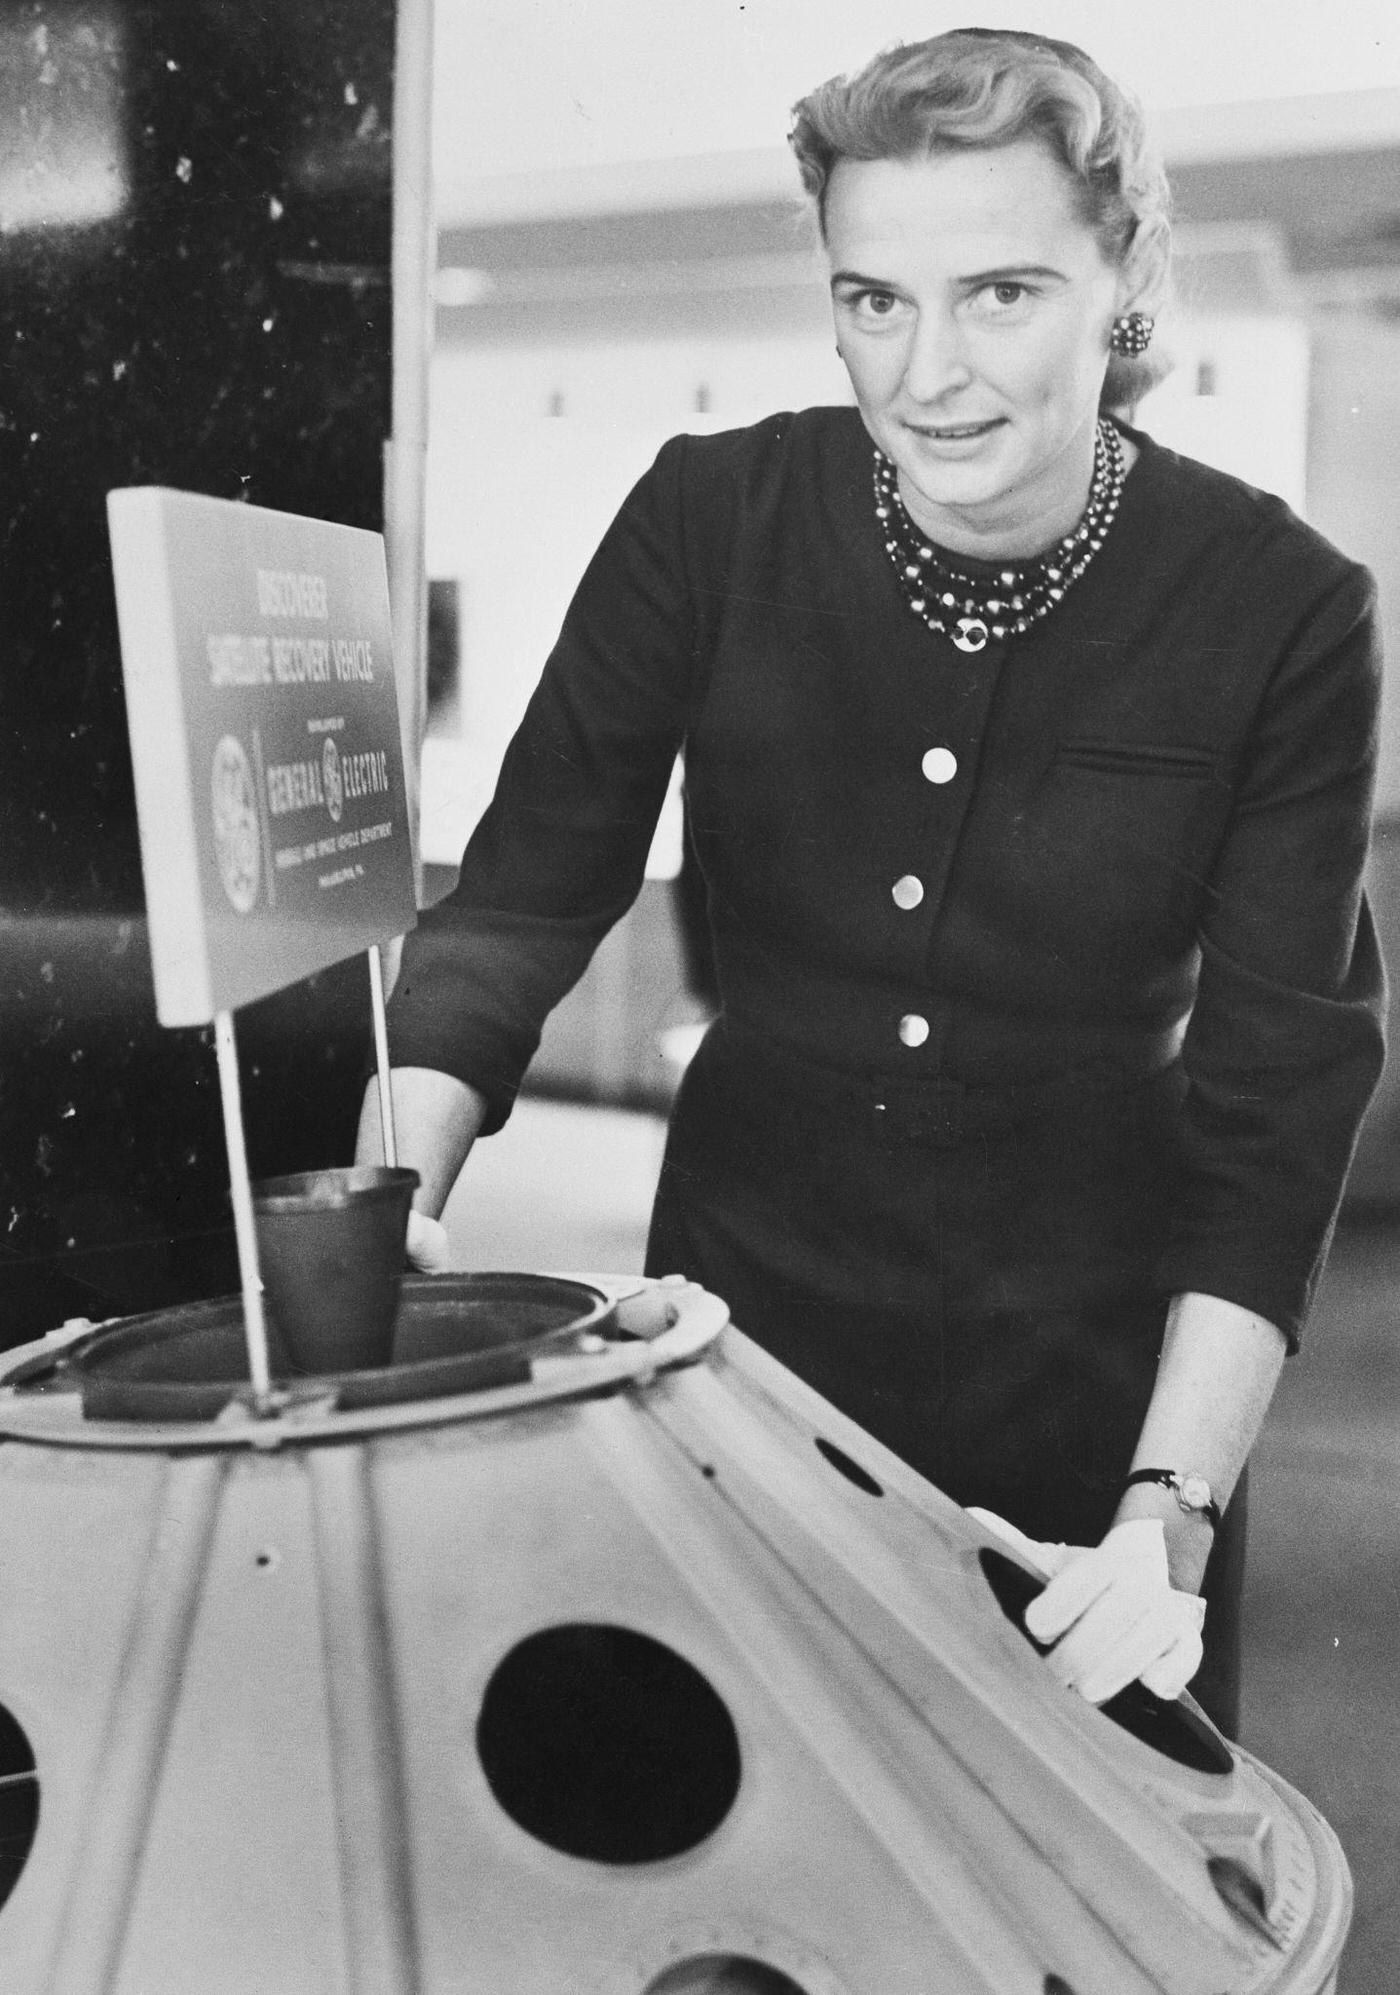 Jerrie Cobb Standing Near Satellite Model, 1950s